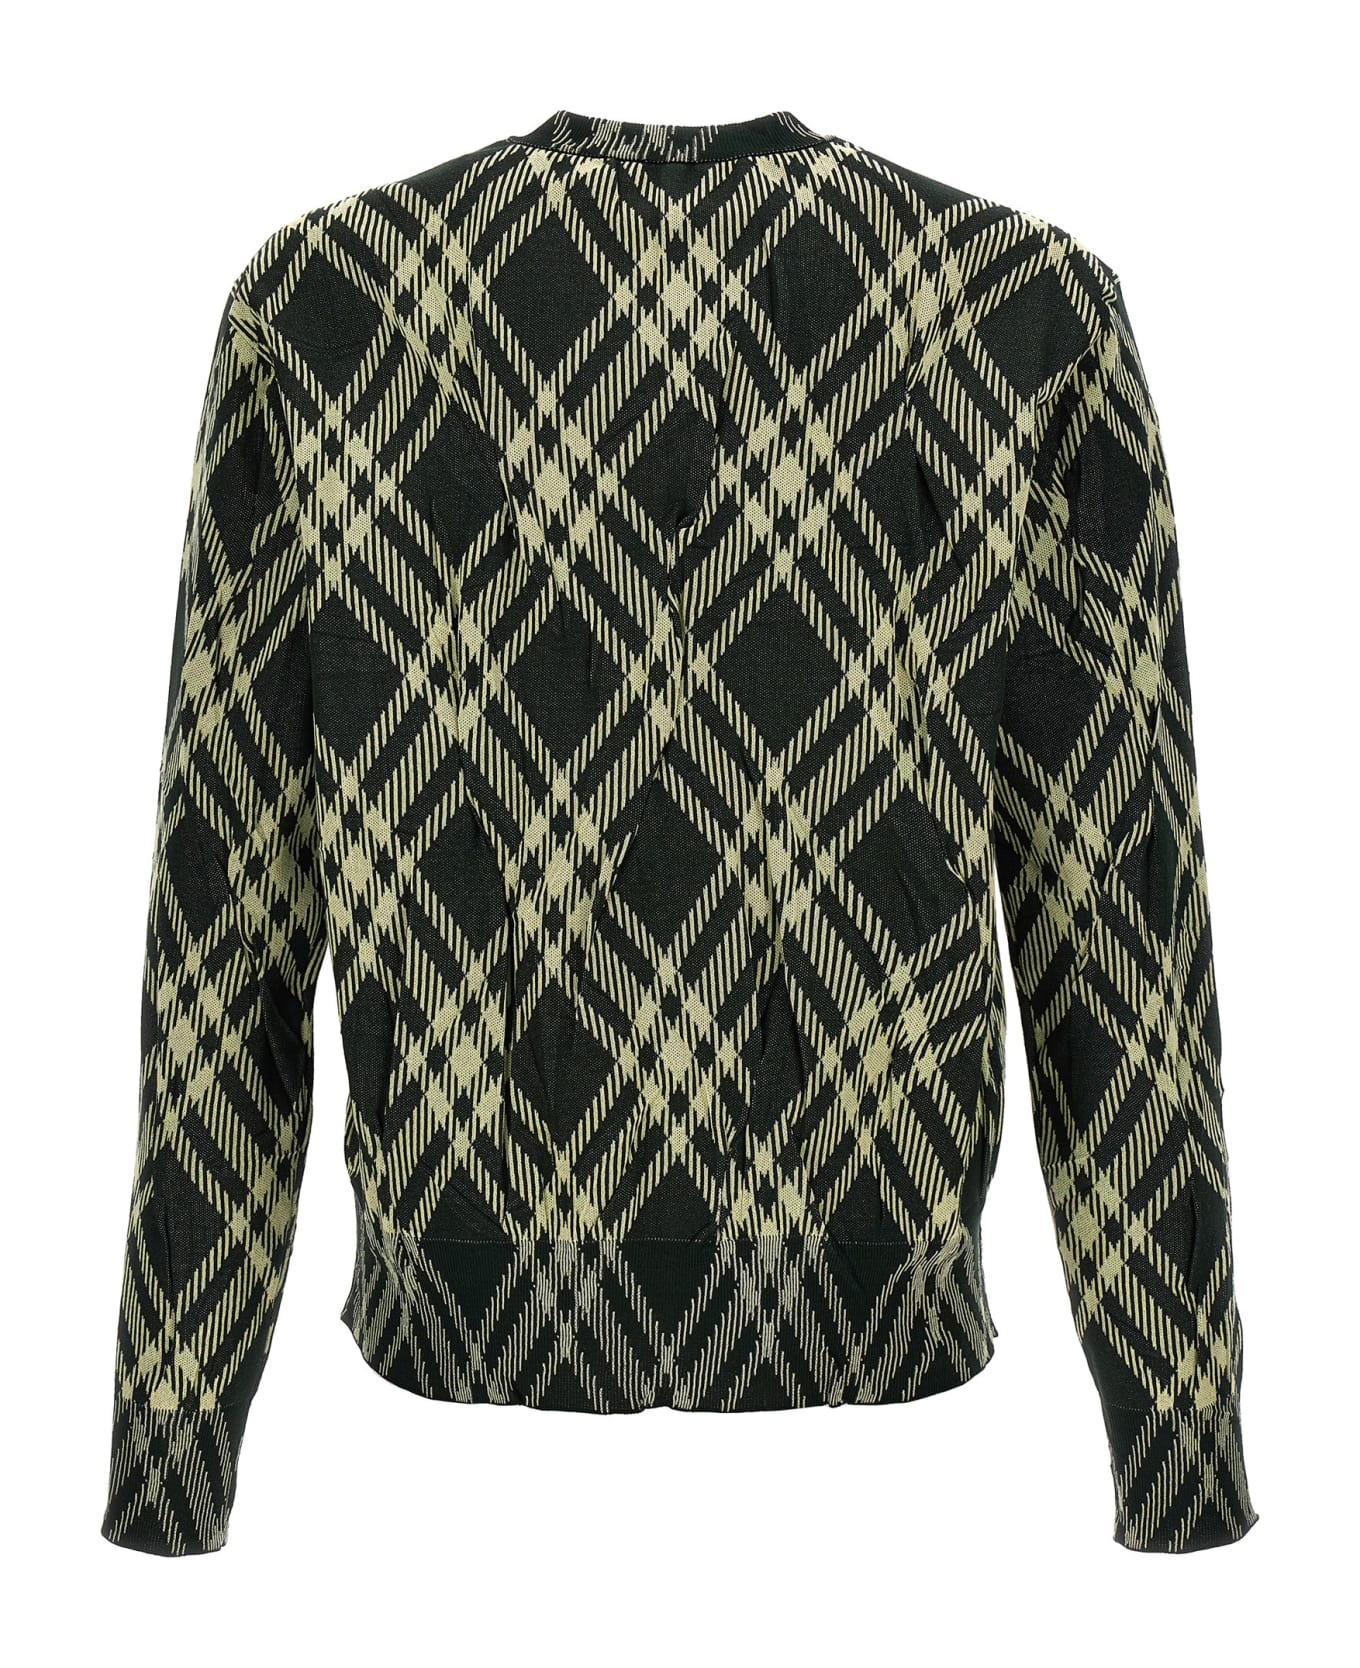 Burberry Check Crinkled Sweater - Green ニットウェア